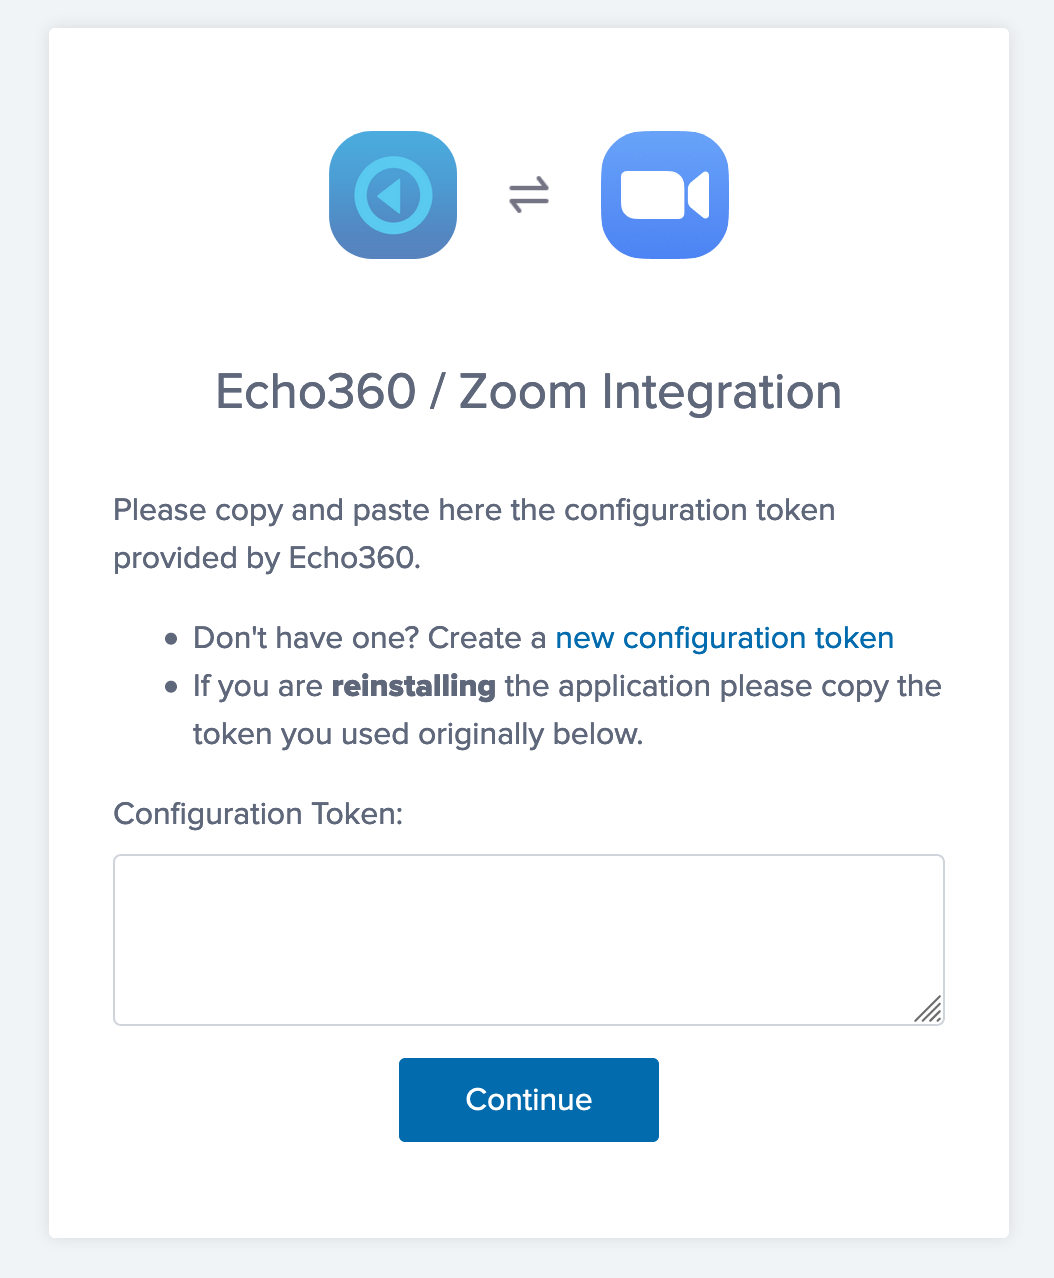 Zoom installation screen requesting Echo360 configuration token as described